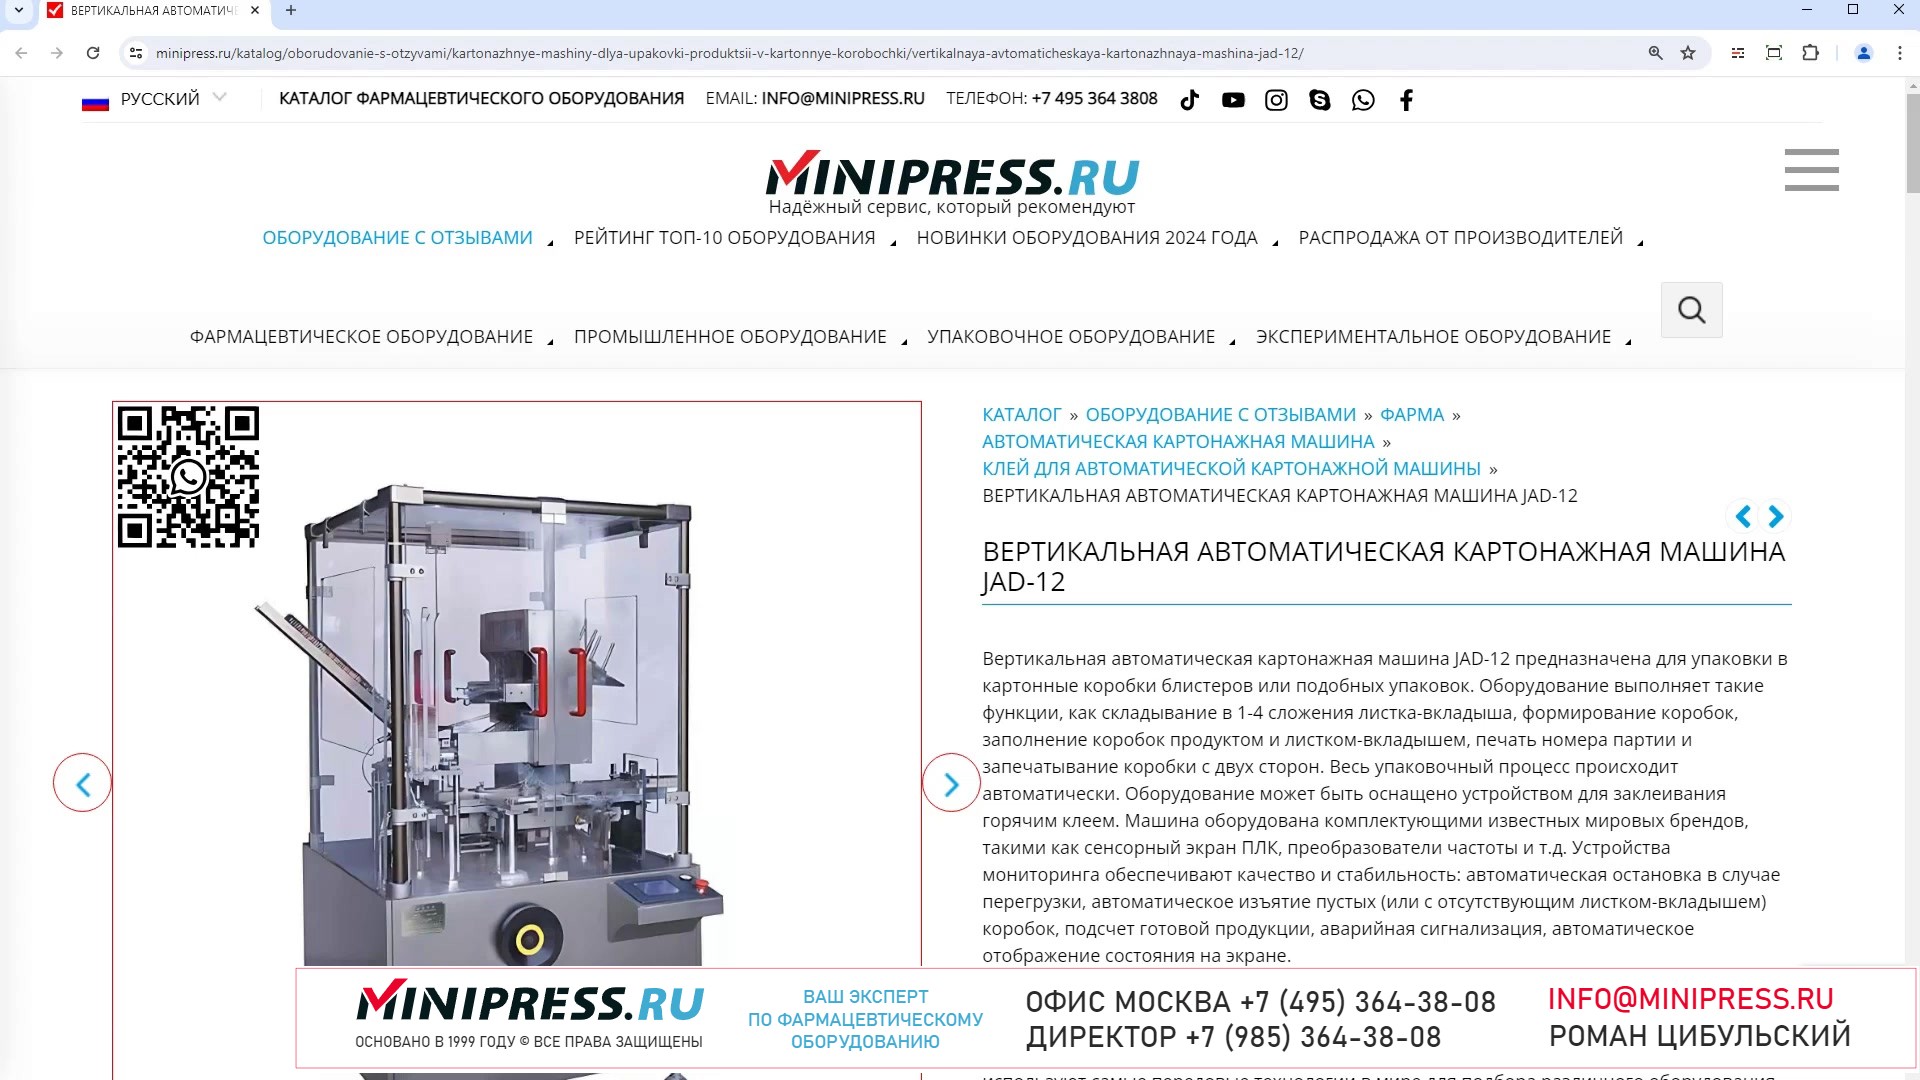 Minipress.ru Вертикальная автоматическая картонажная машина JAD-12